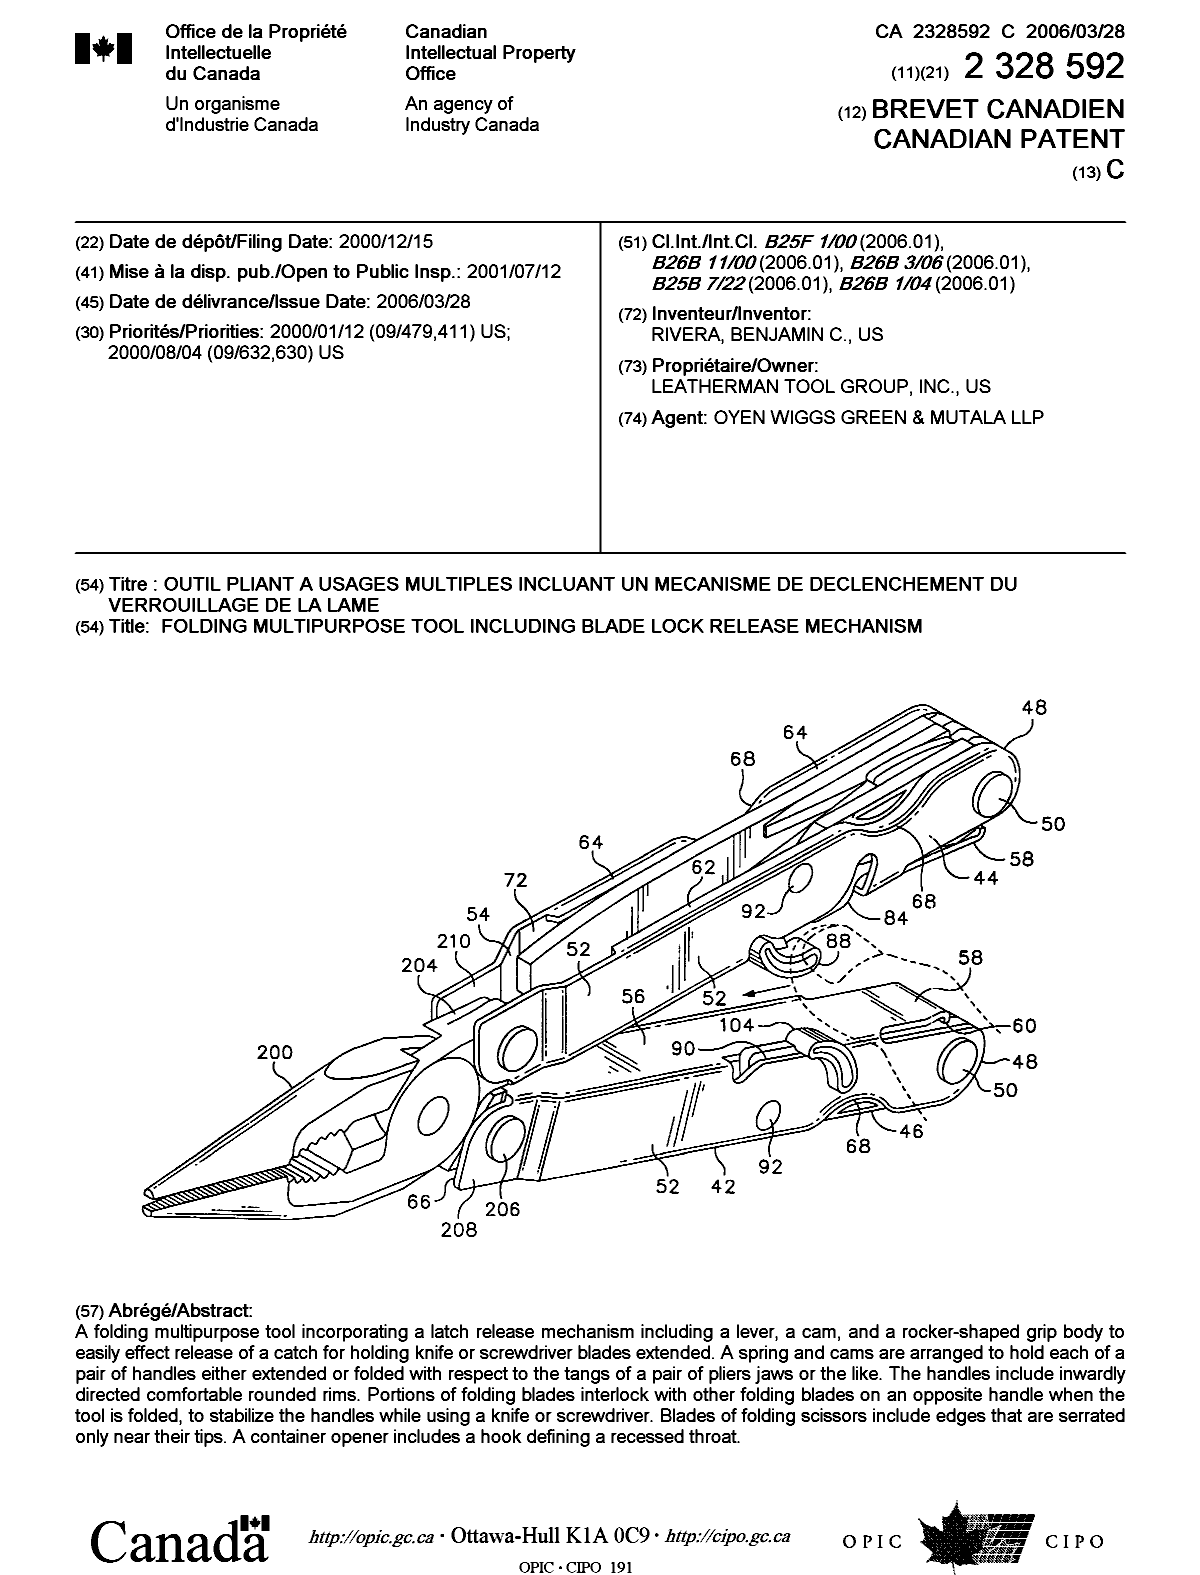 Document de brevet canadien 2328592. Page couverture 20060303. Image 1 de 1